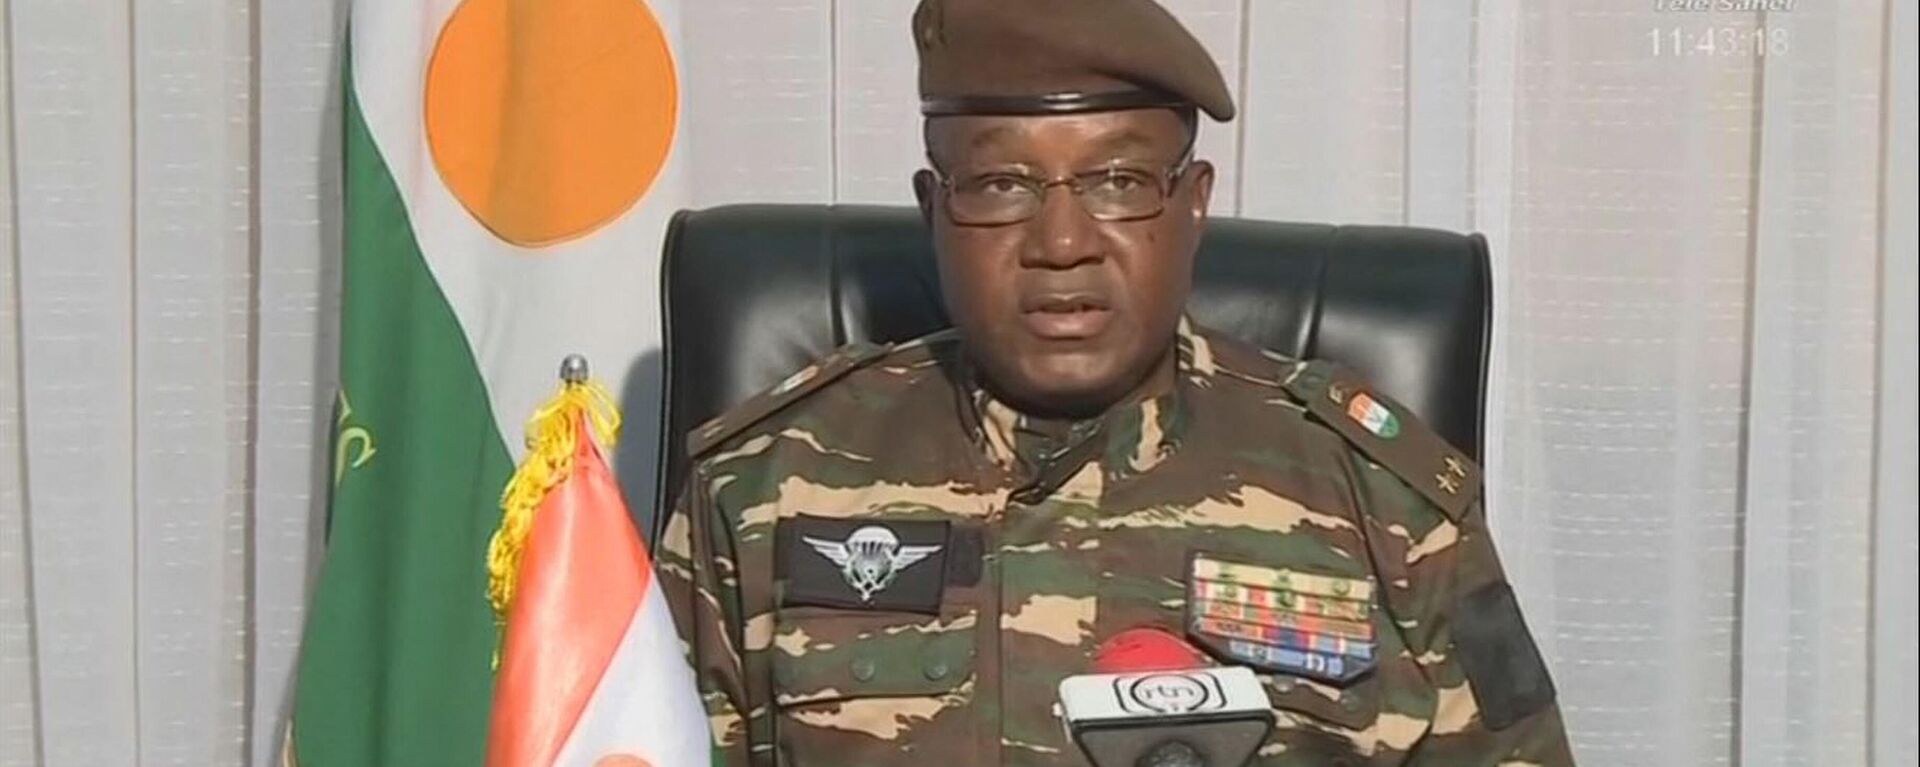 El general rebelde Omar Abdourahamane Tchiani que se proclamó como líder de la junta golpista en Níger, el 28 de julio 2023 - Sputnik Mundo, 1920, 19.08.2023